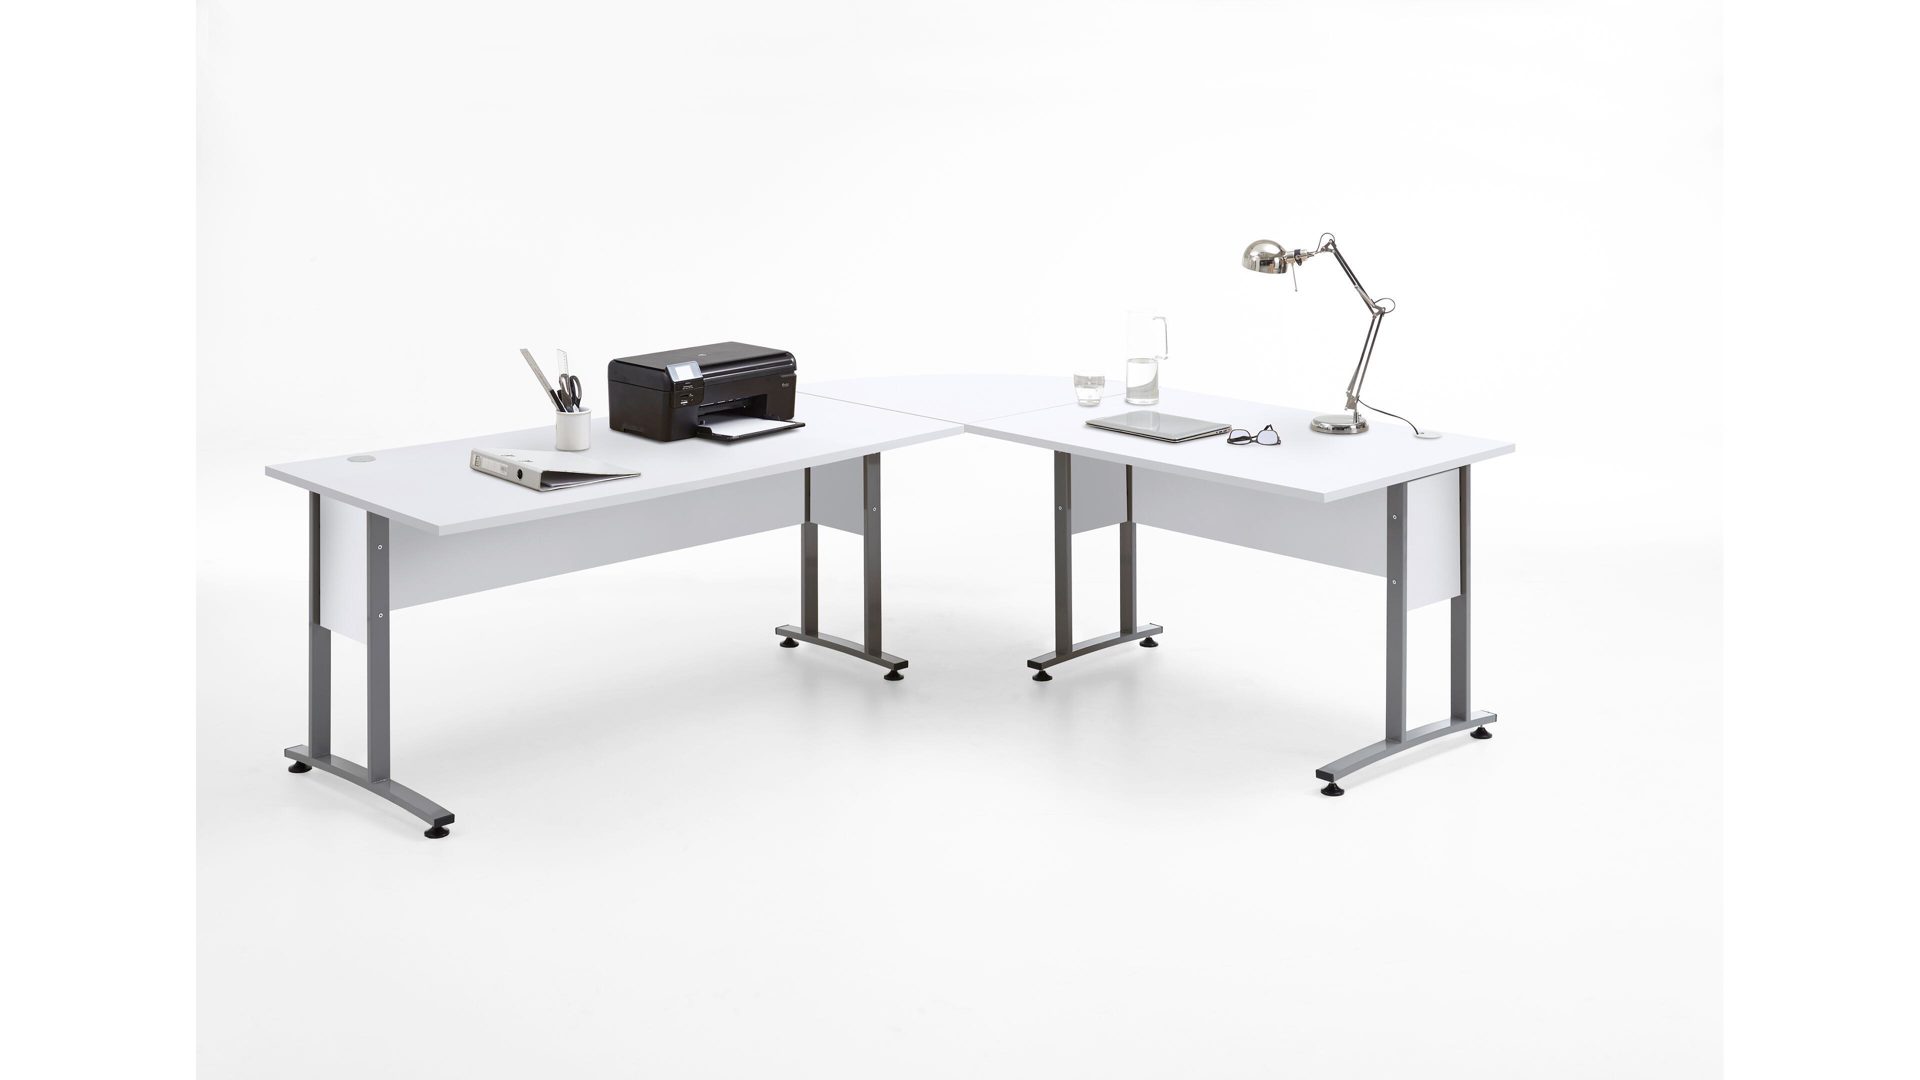 Schreibtisch Fmd furniture aus Holz in Weiß Eckschreibtisch bzw. Büromöbel brilliantweiße Kunststoffoberflächen – Stellfläche ca. 240 x 200 cm